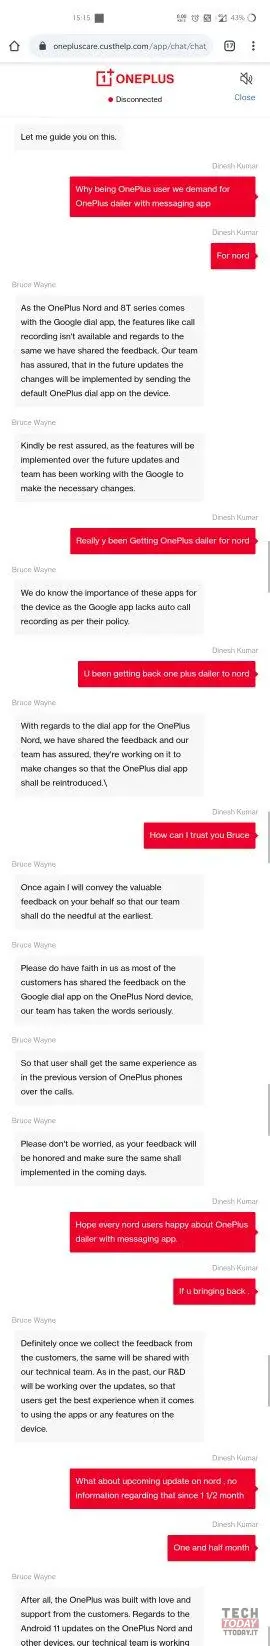 OnePlus potrebbe sostituire le app Telefono e Messaggi di Google con le proprie